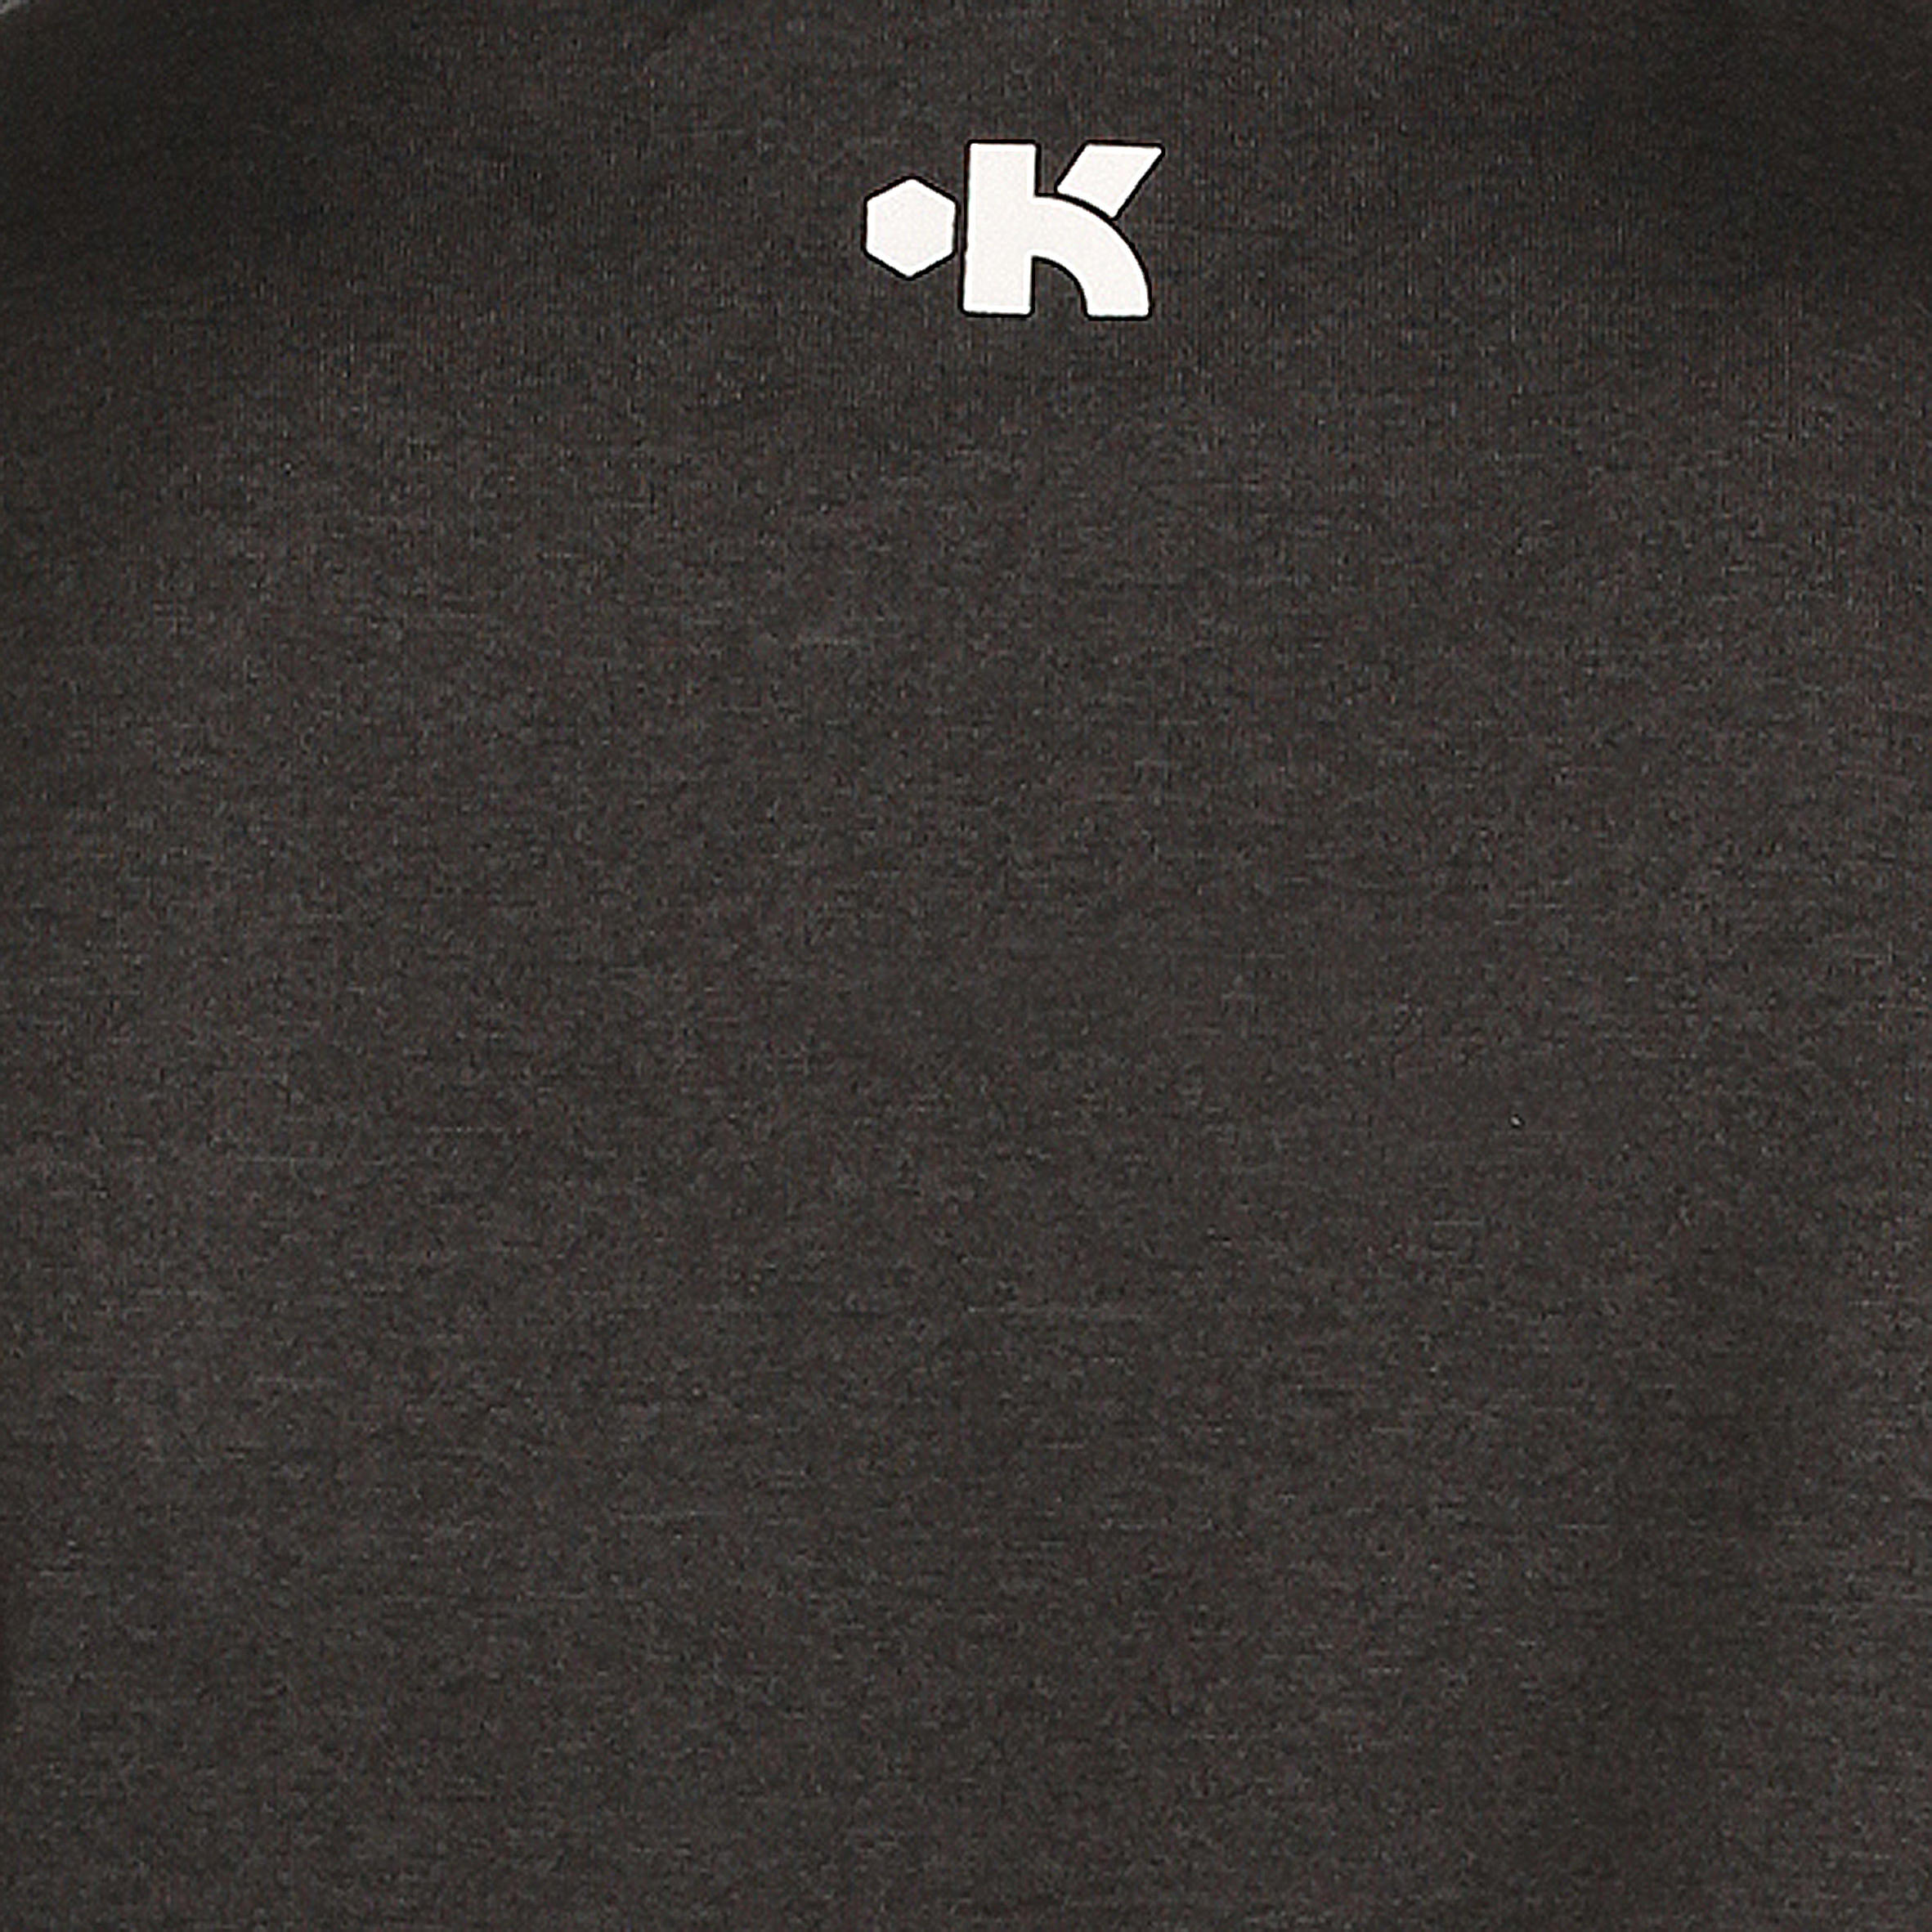 Fast Brooklyn Kids Basketball T-shirt - Black 6/6